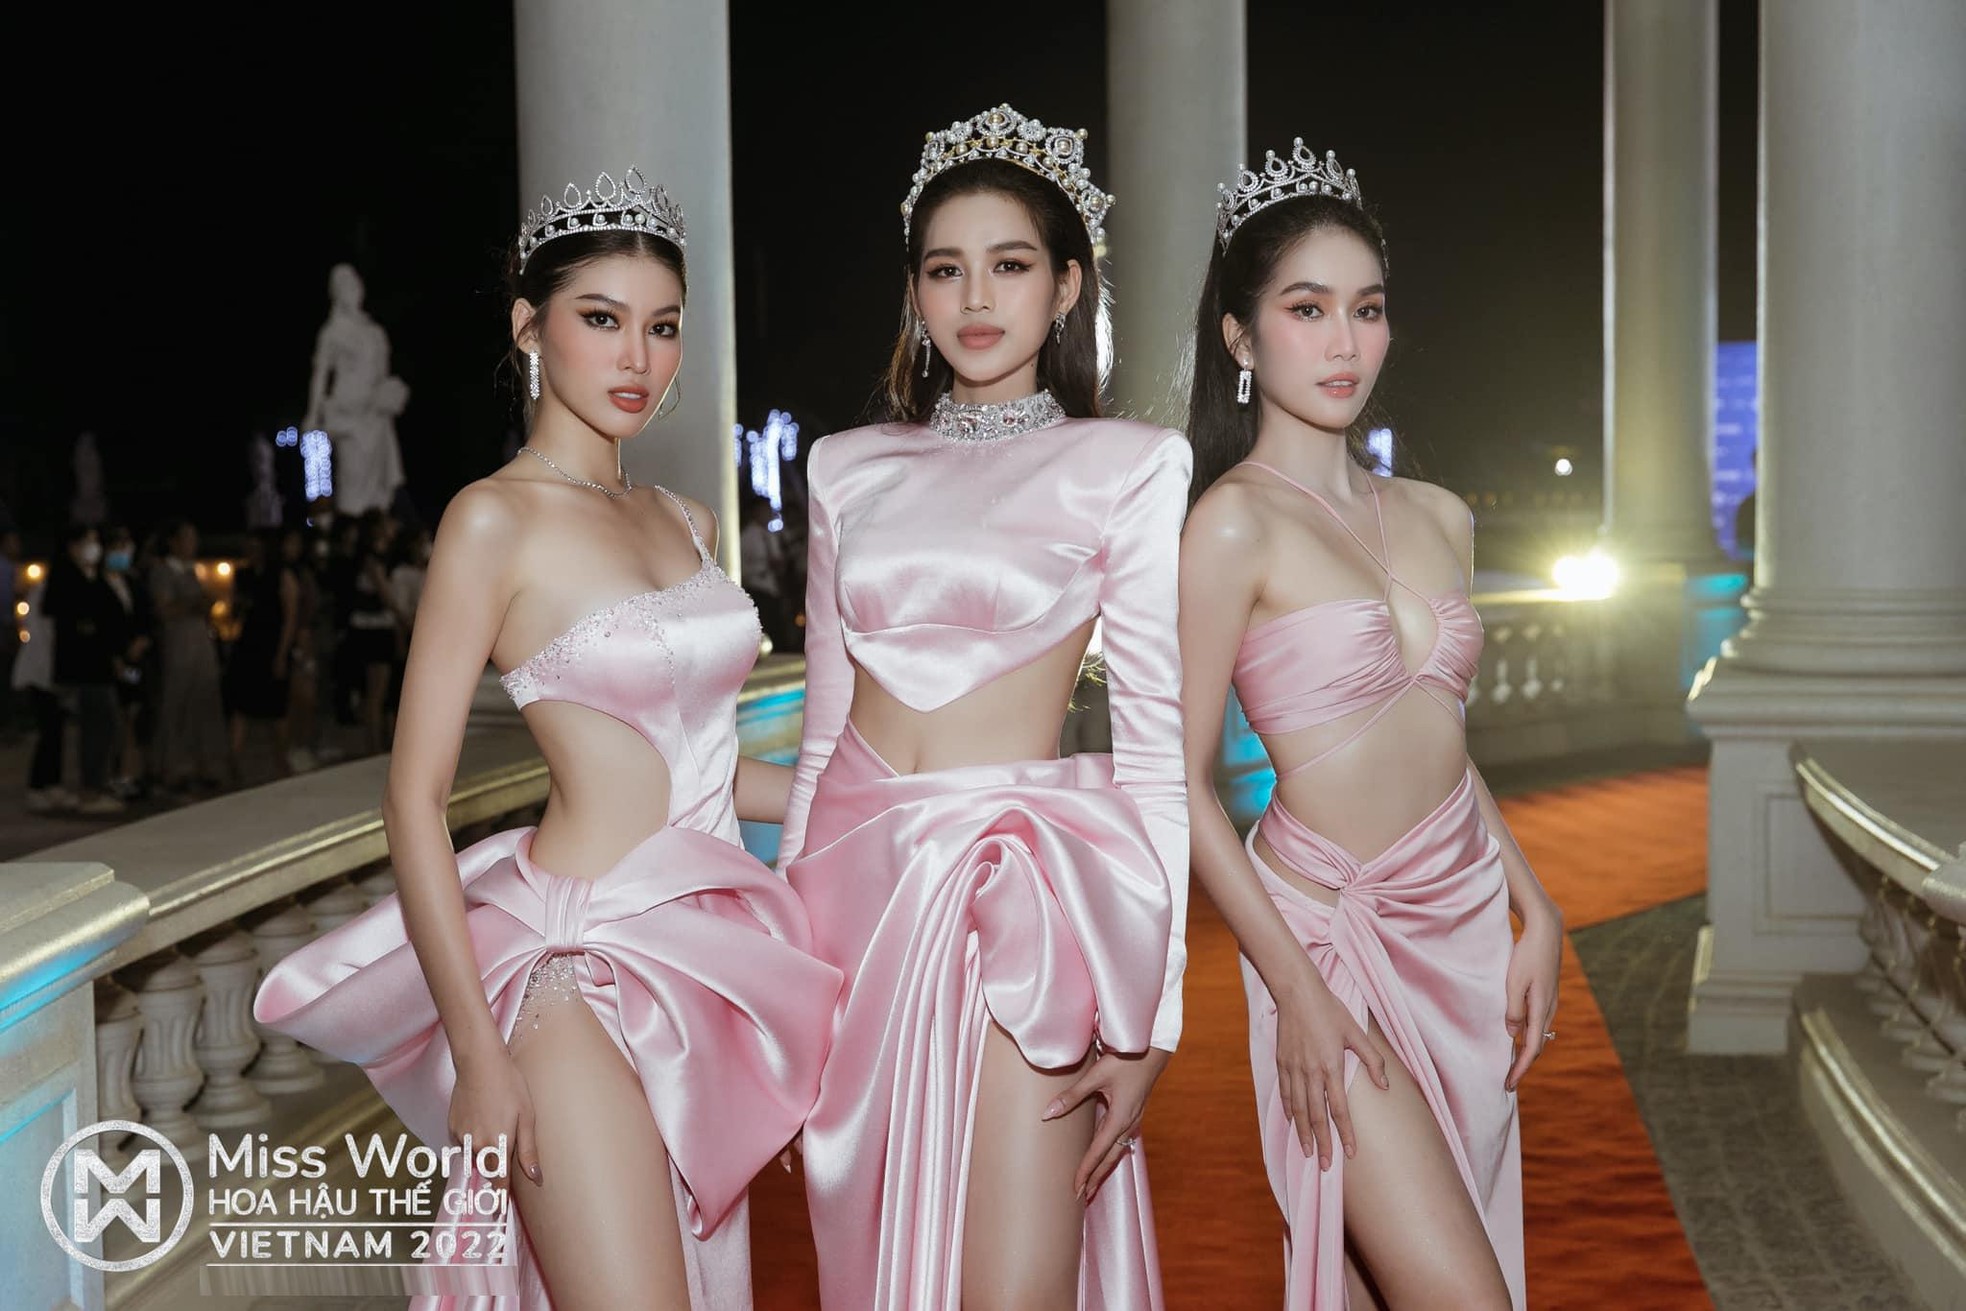 Những lần ăn mặc đồng điệu trên thảm đỏ của Top 3 Hoa hậu Việt Nam 2020 - Ảnh 6.